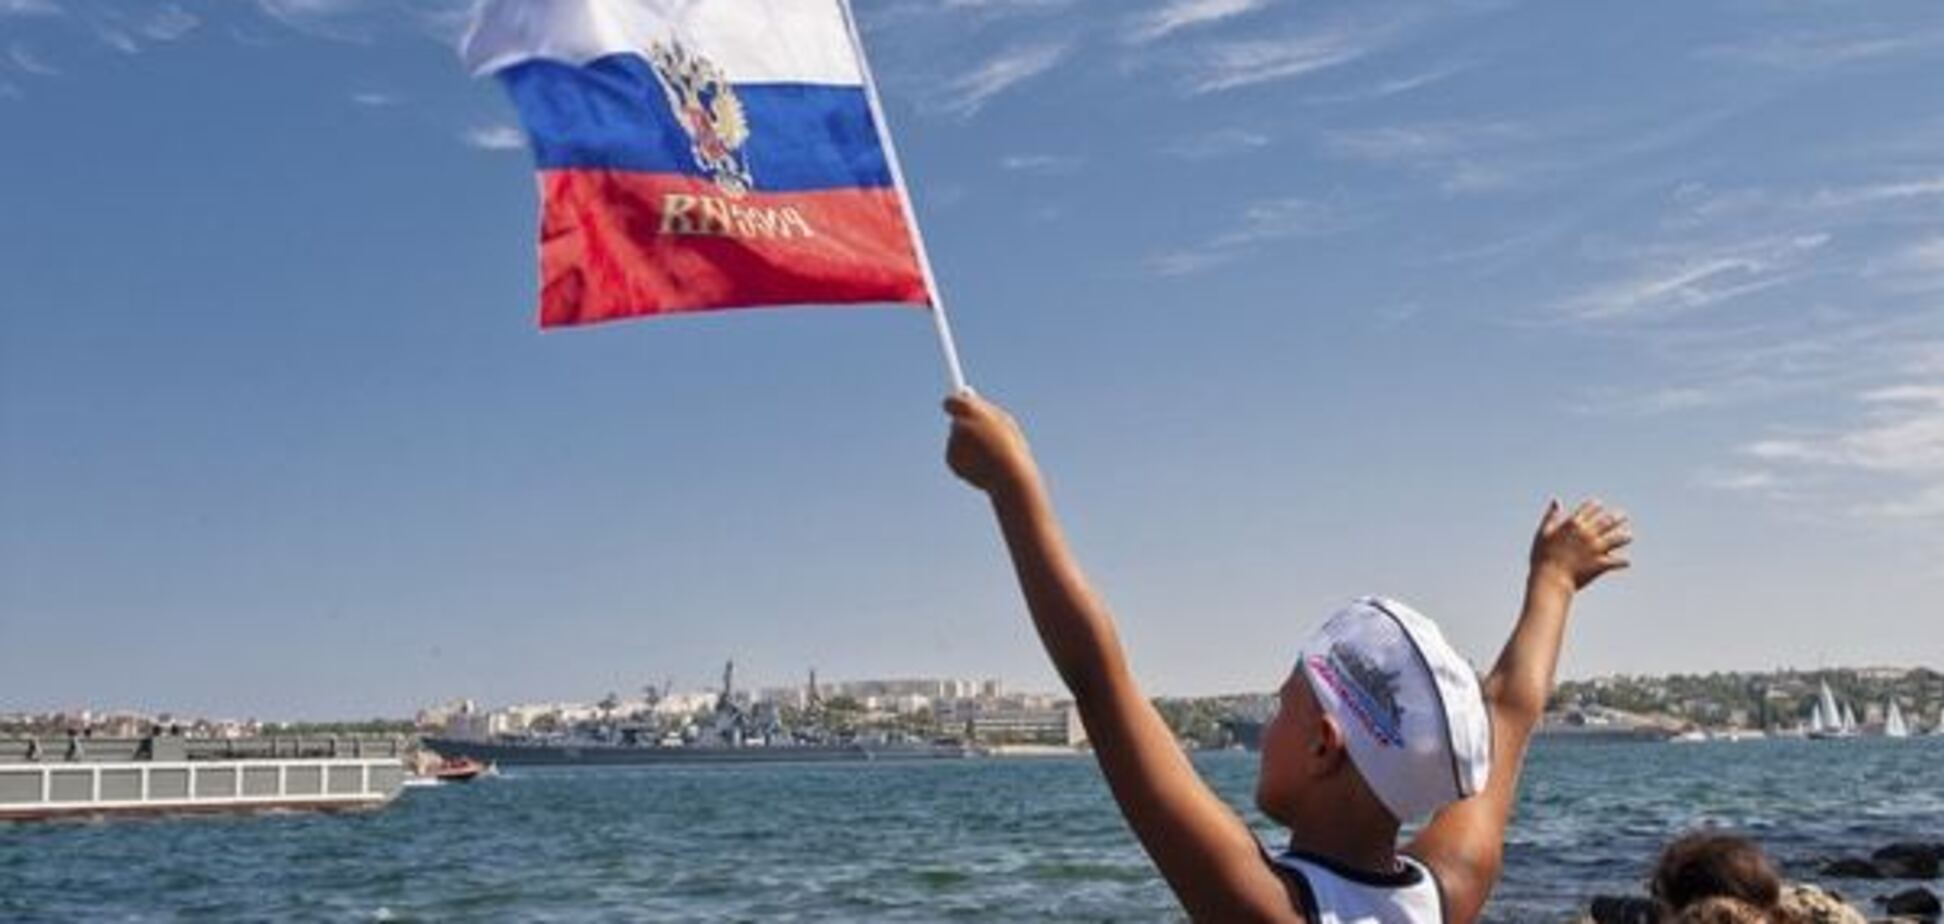 Ганапольский: Крым, кажется, забрали навсегда, но 'навсегда' ничего не бывает